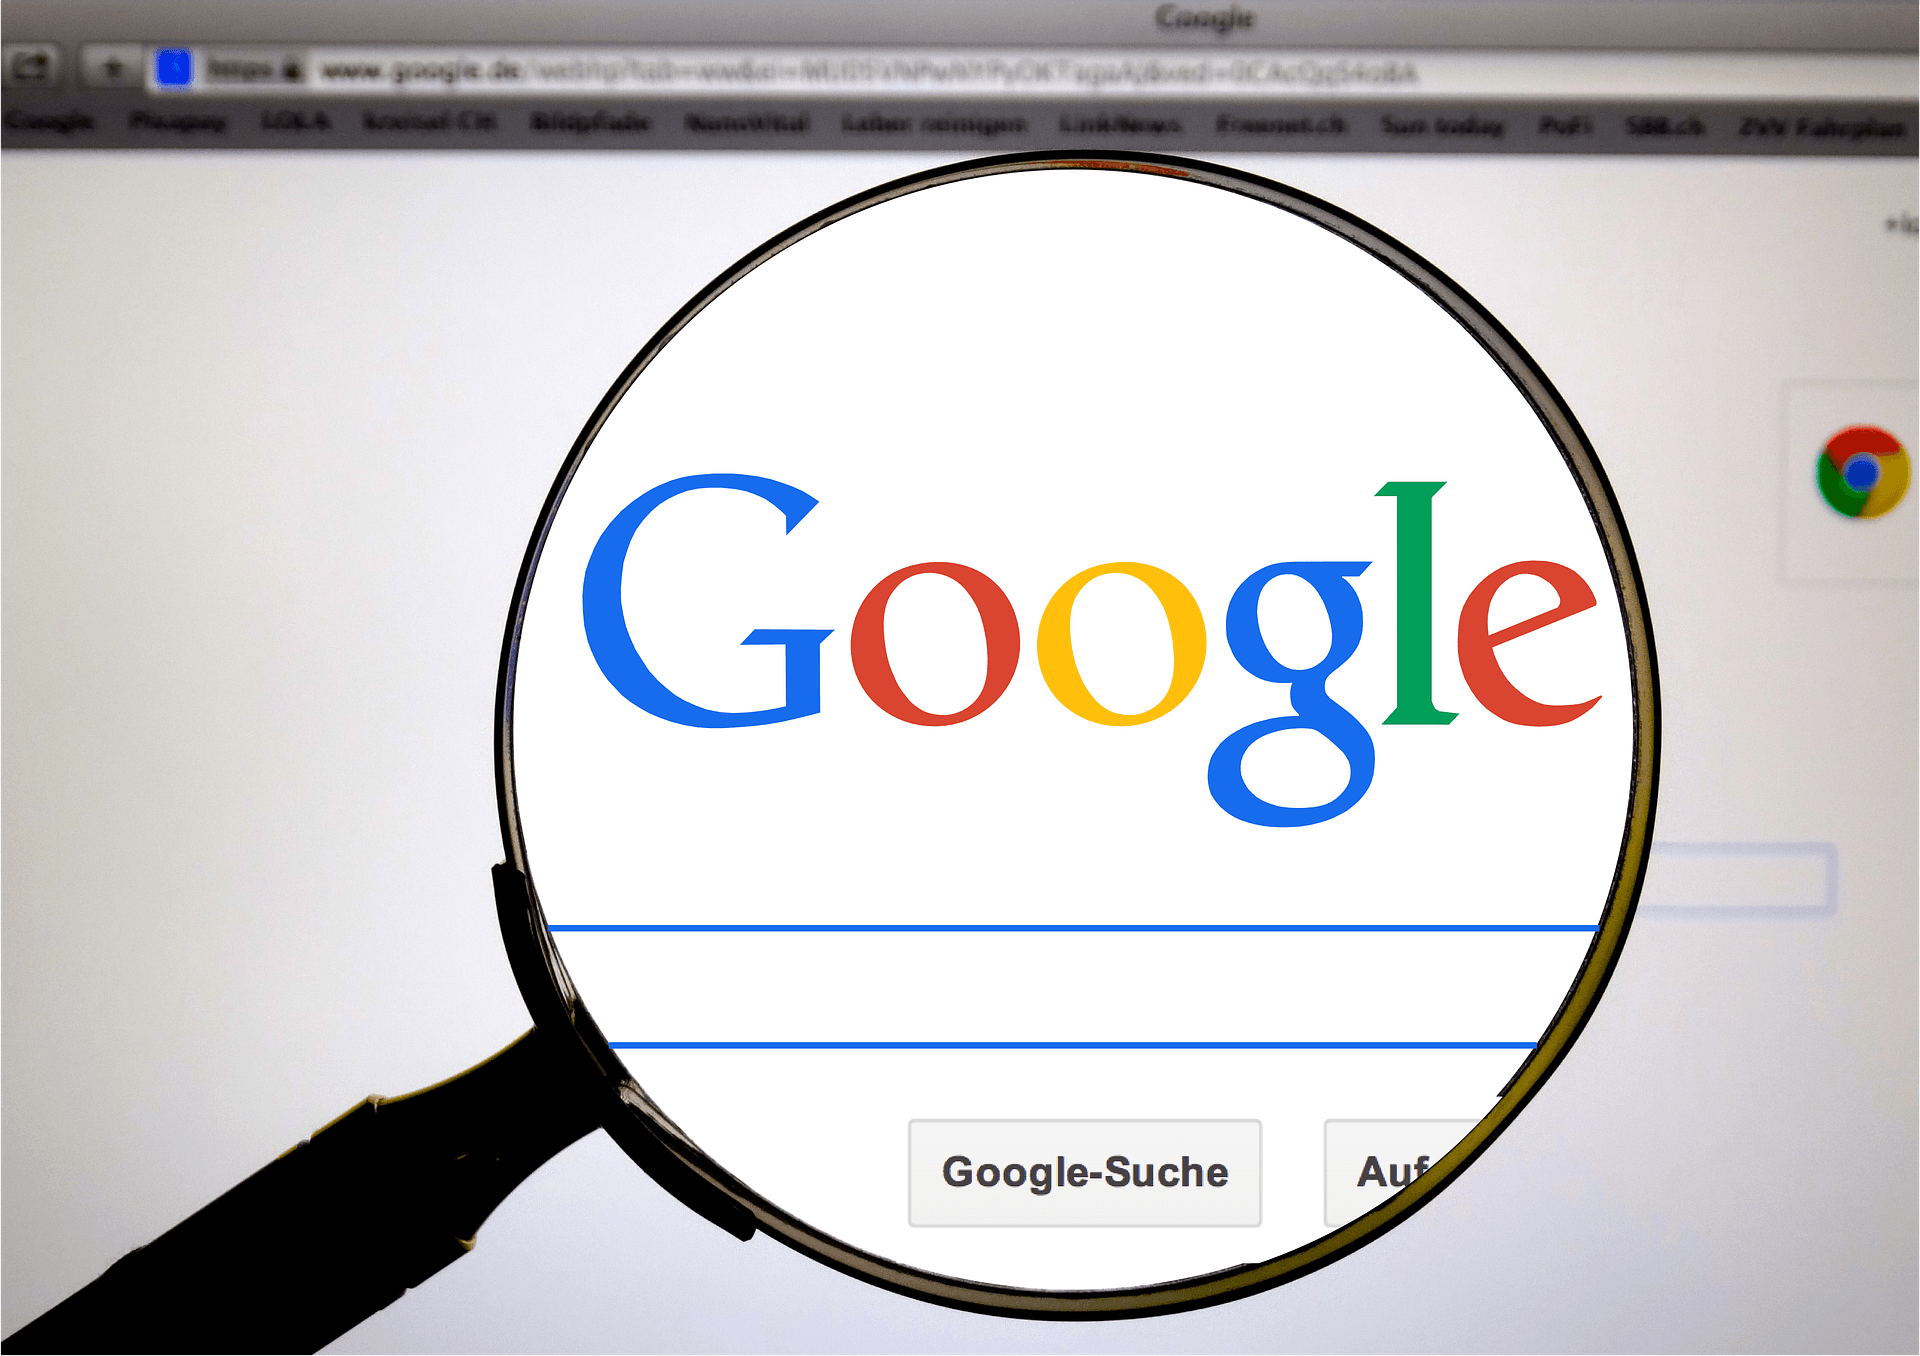 Google gibt zu, dass es falsch war - es wird mehr als 200 Millionen Euro Strafe zahlen 355